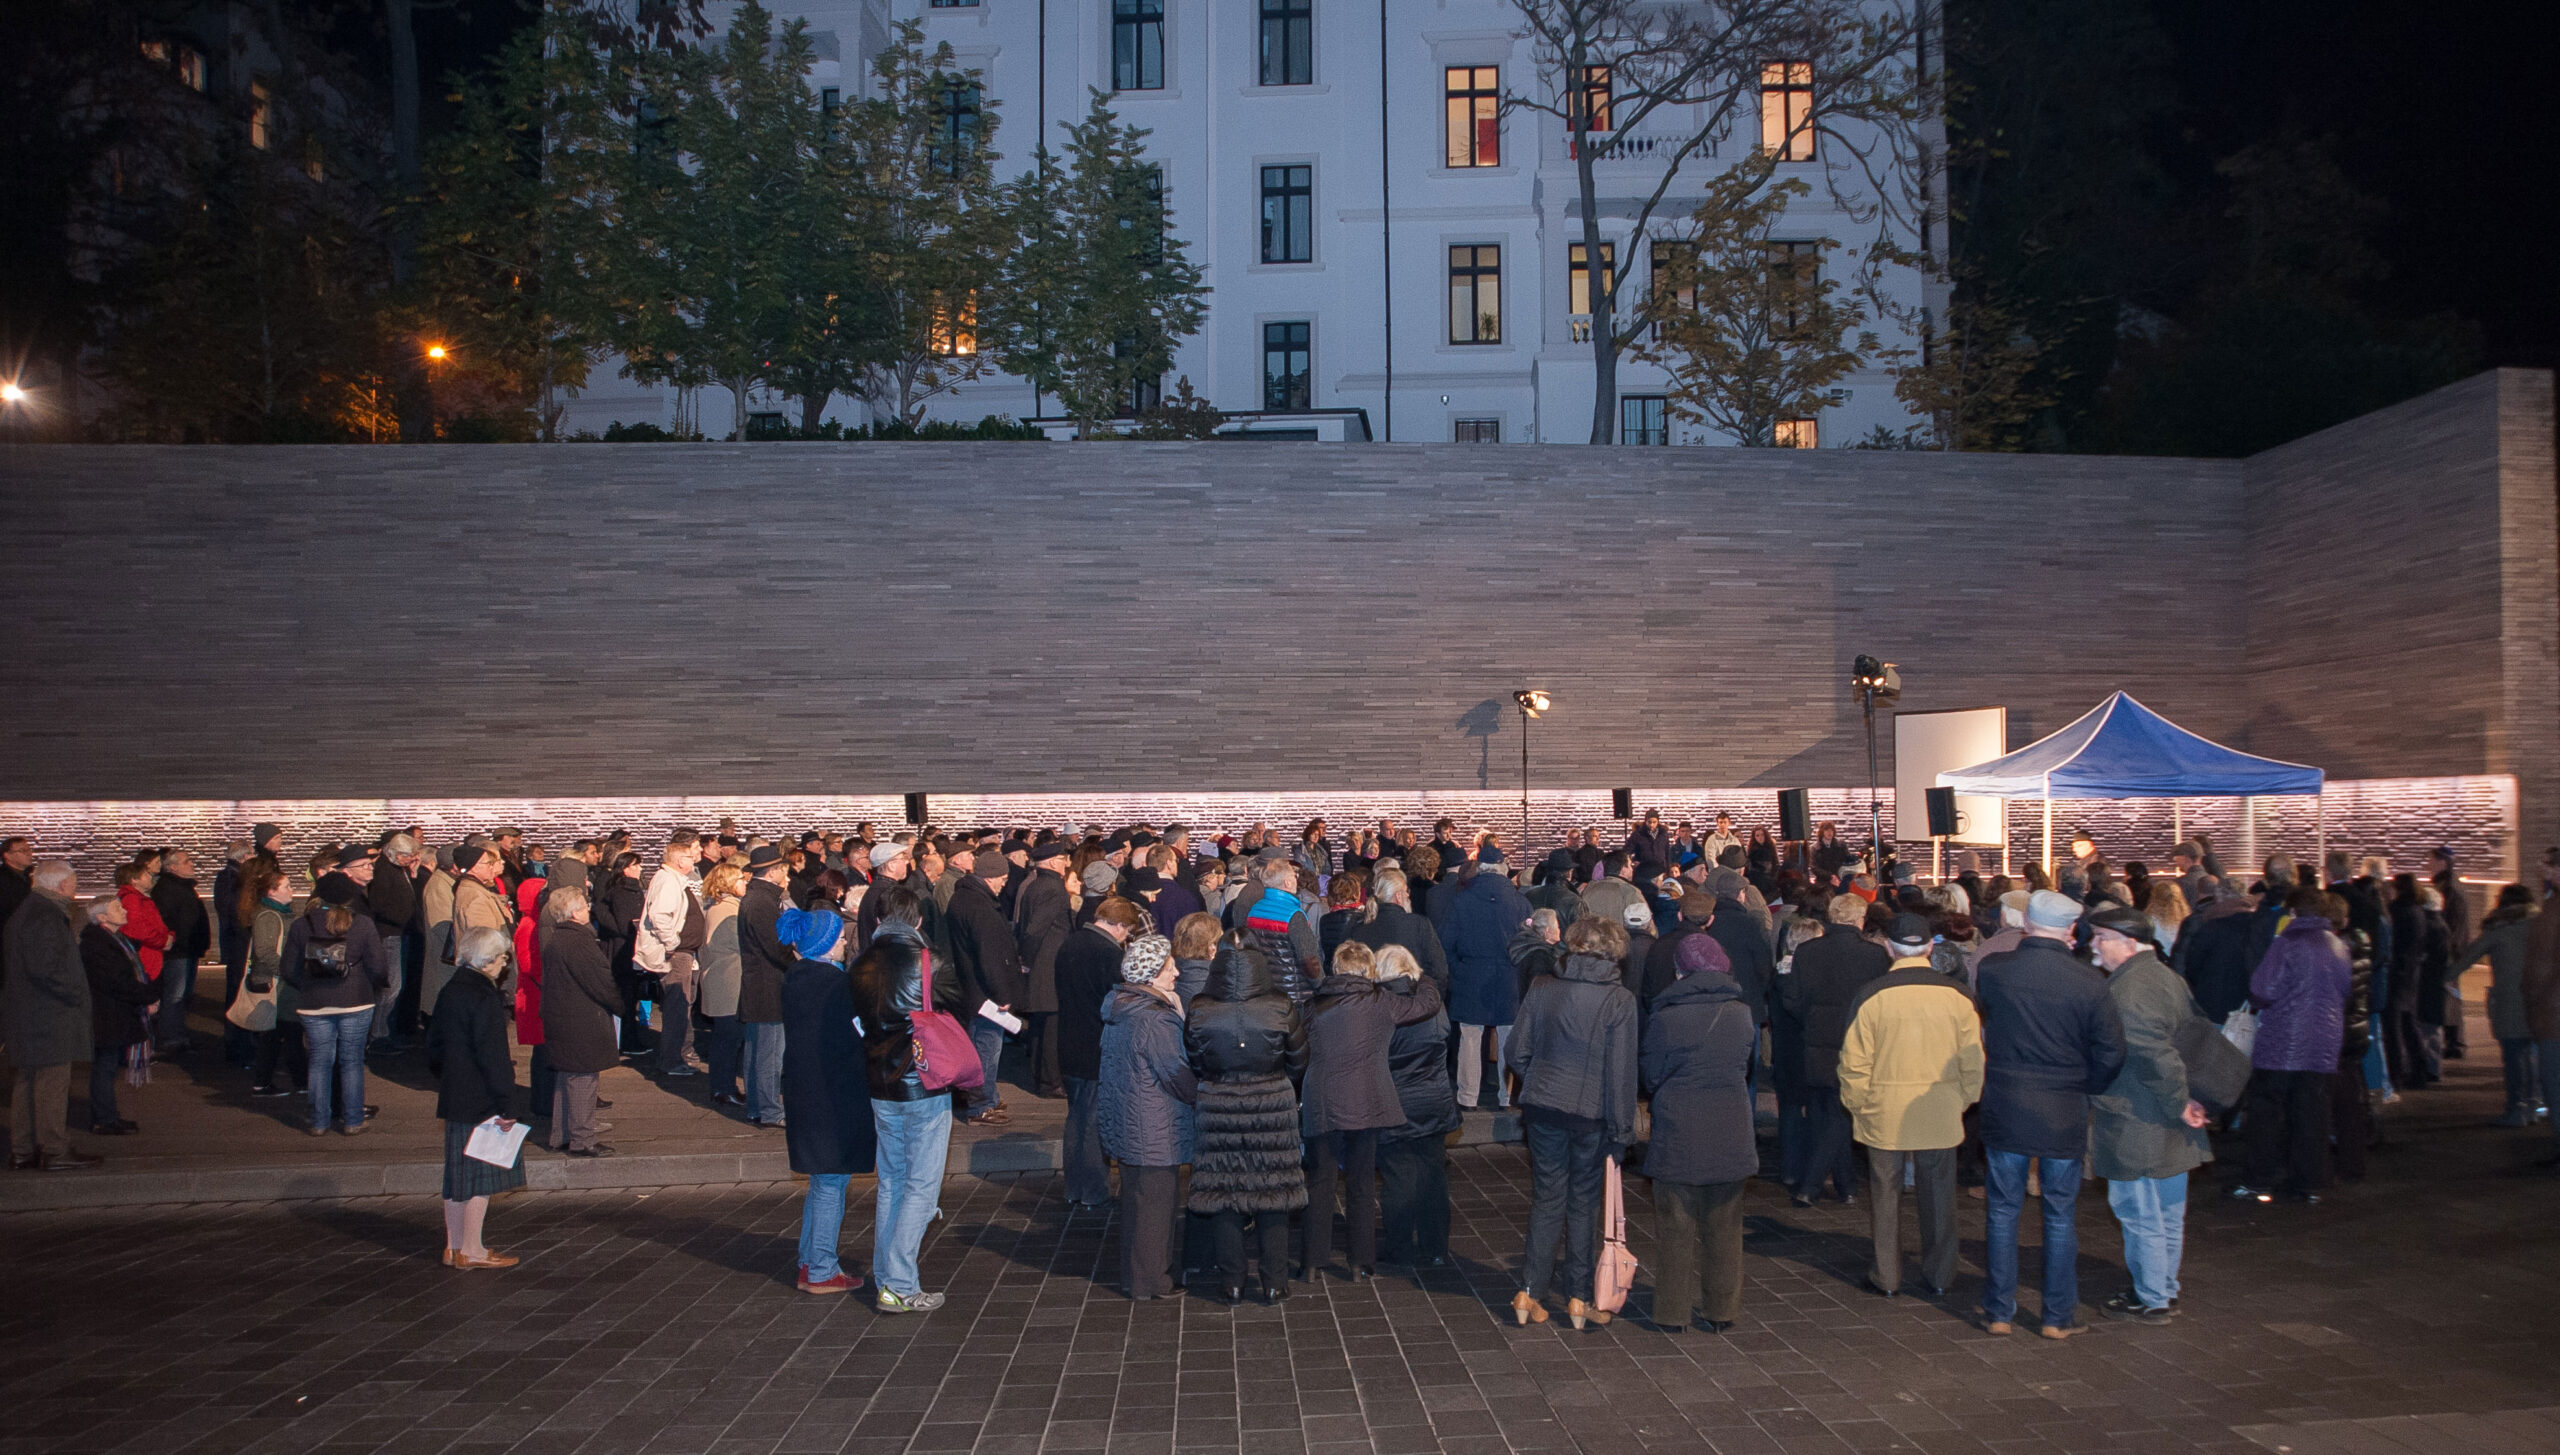 Commémoration des pogroms de novembre au mémorial pour les juifs assassinés de Wiesbaden. Photographe : Igor Eisenschtat. Collection de la communauté juive de Wiesbaden